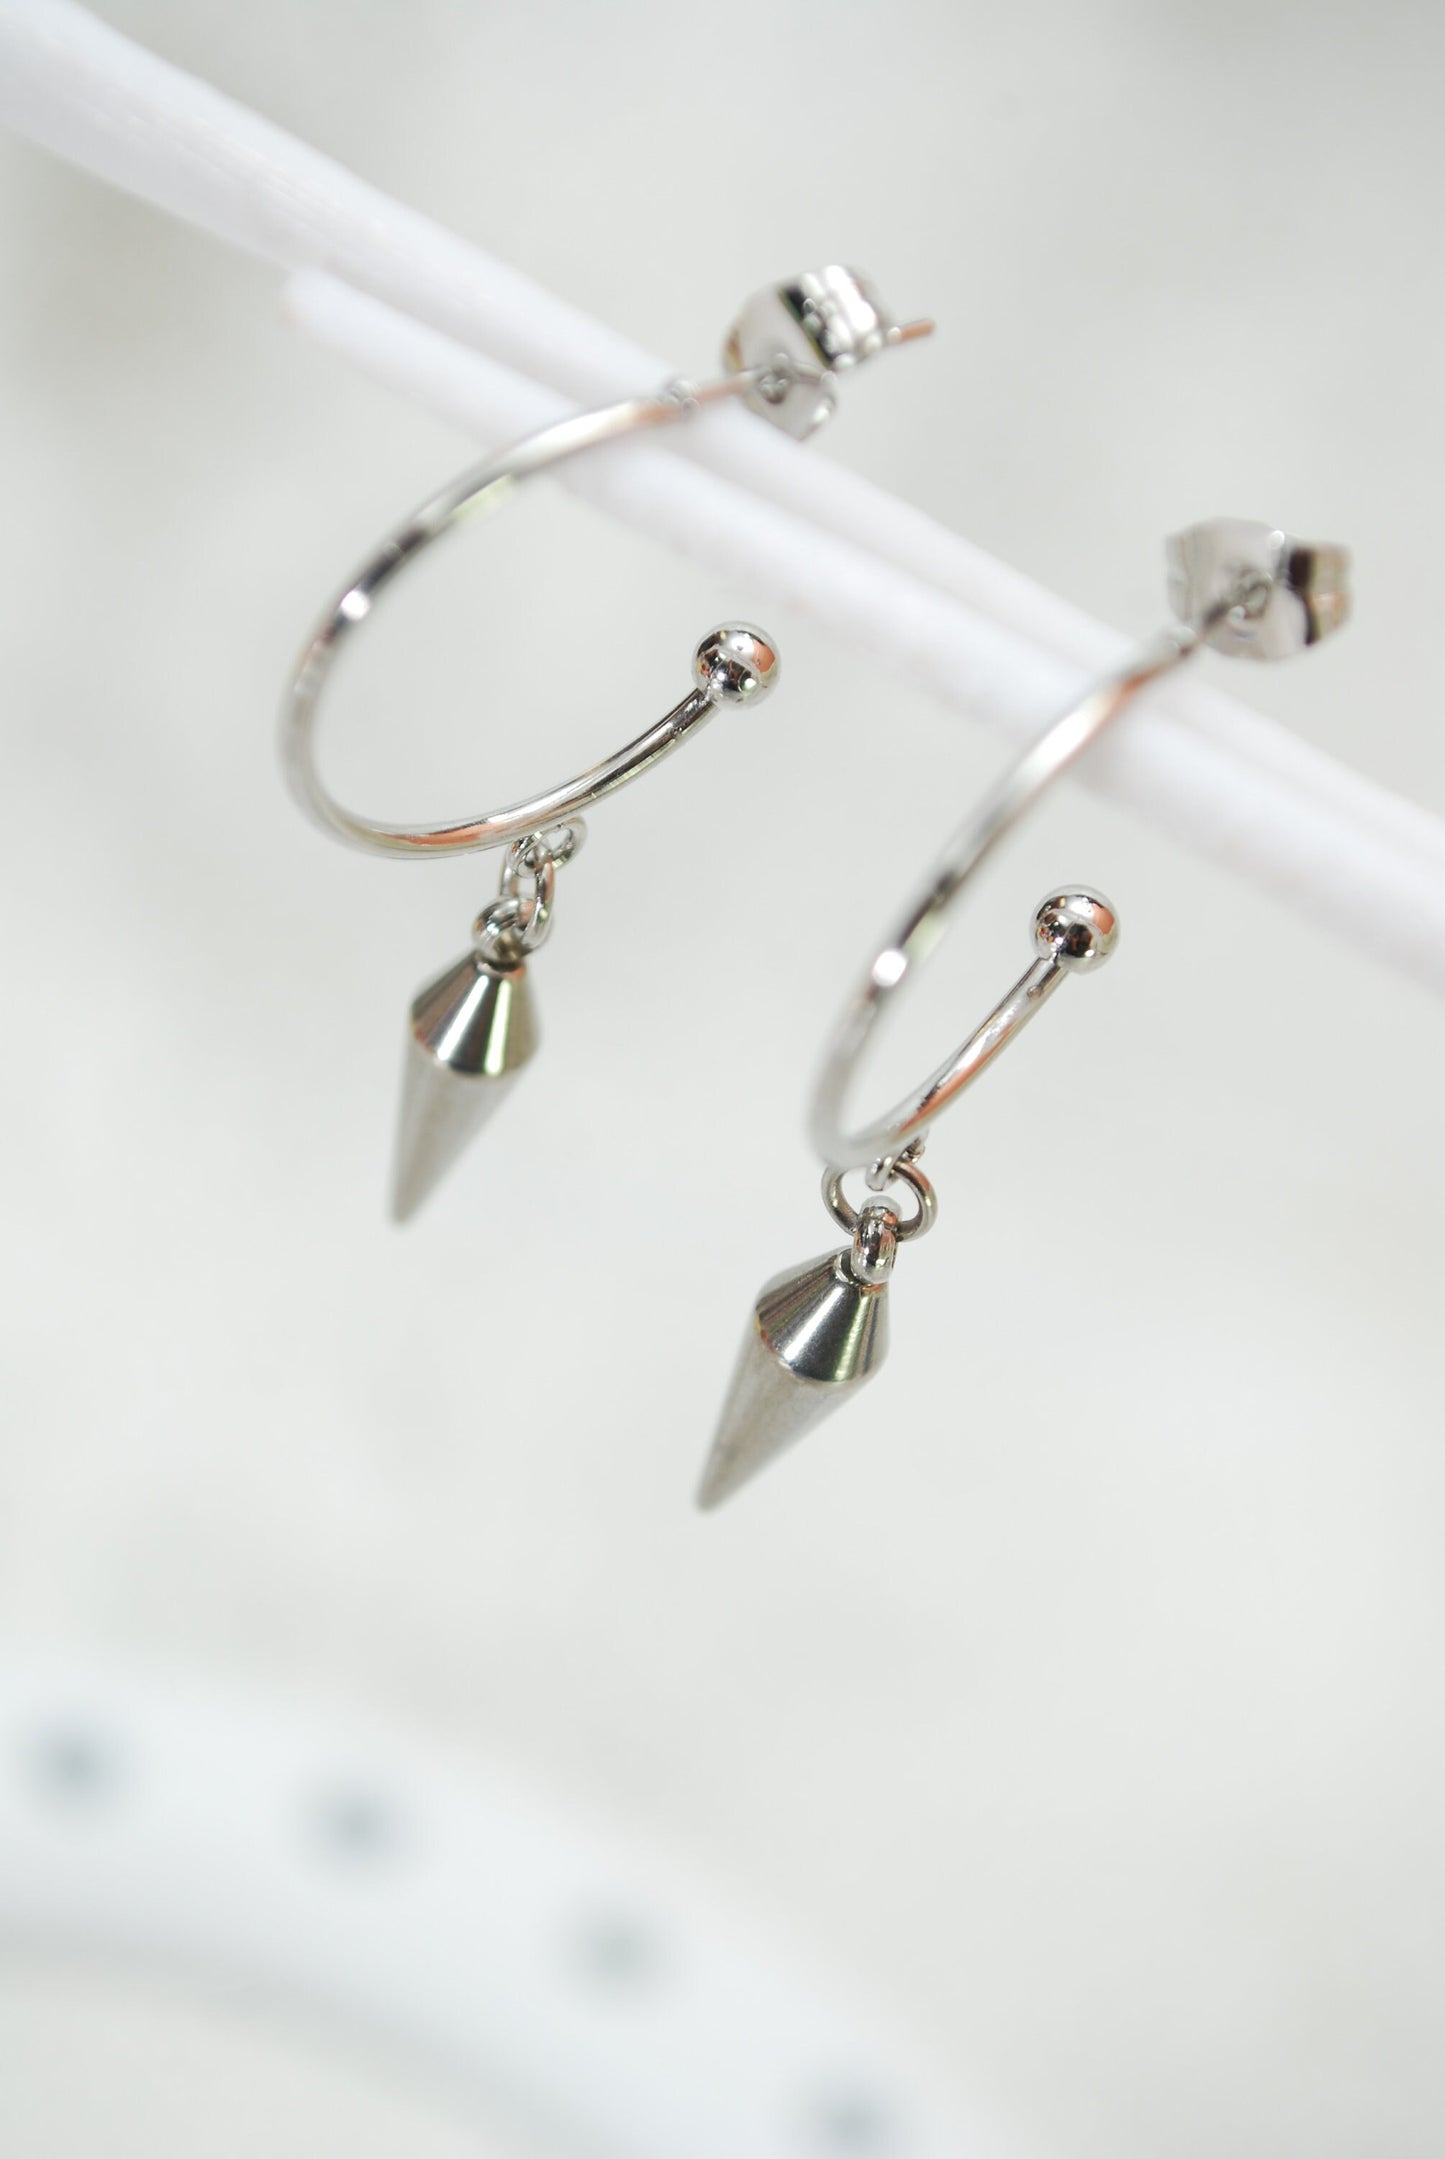 Simple stainless steel spike hook earrings, 4cm - 1.5" simple everyday jewelry, hypoallergenic earrings